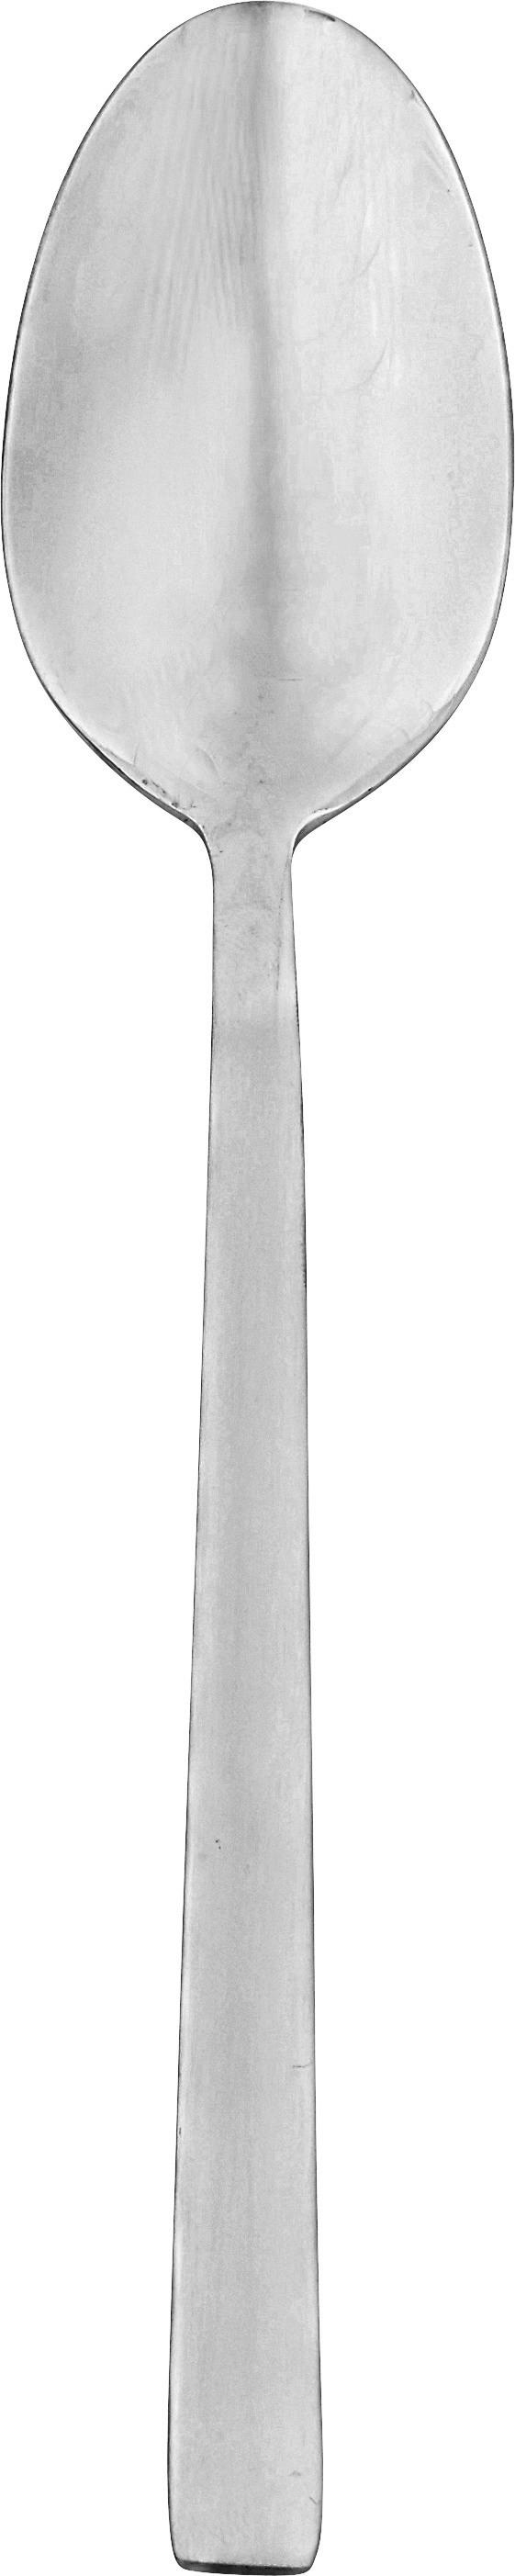 Löffel Jesko 4er-Set L: ca. 20,6 cm - Edelstahlfarben, ROMANTIK / LANDHAUS, Metall (20,6cm) - James Wood